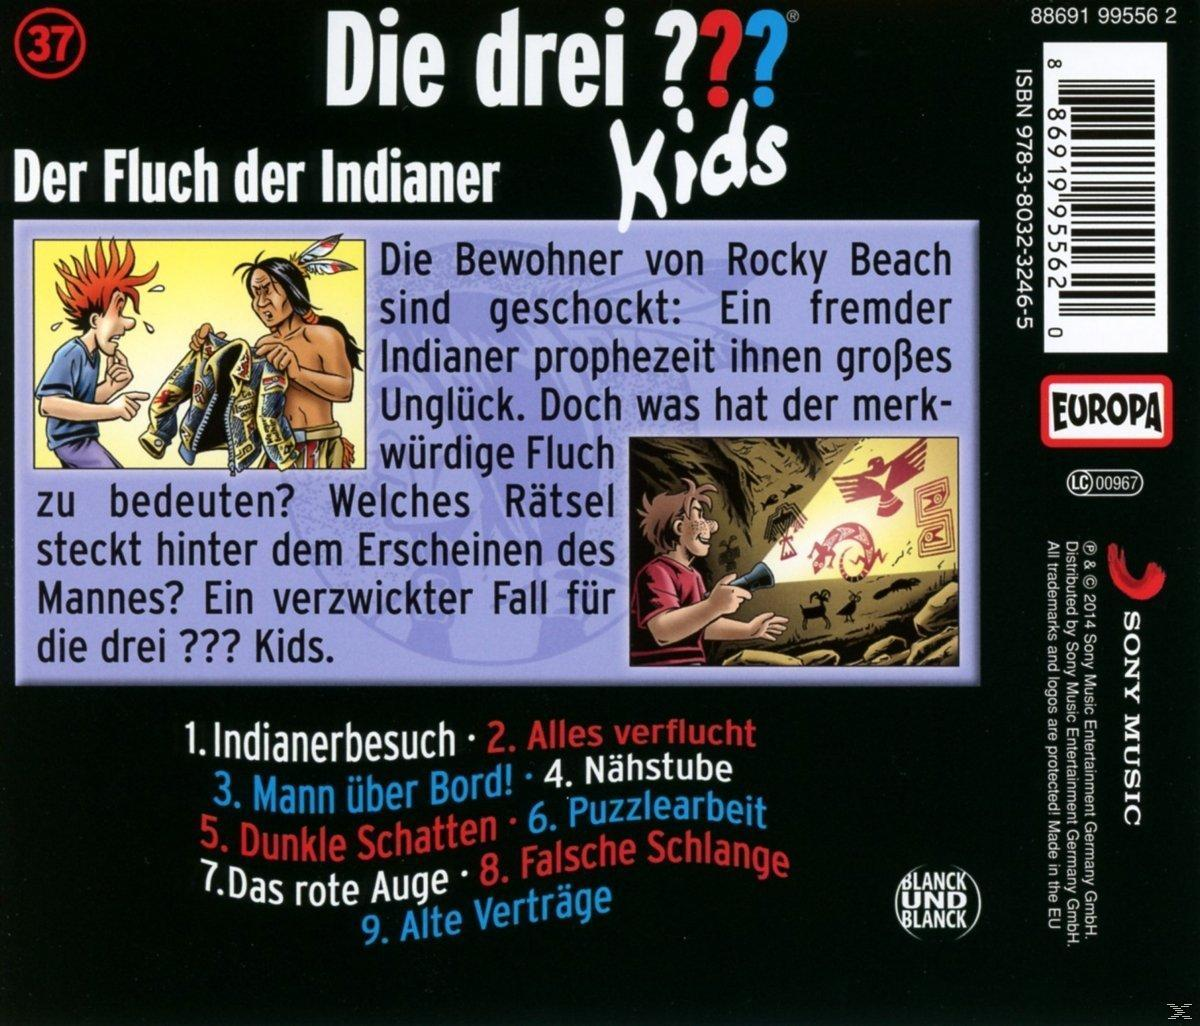 drei Kids der Der (CD) Indianer 37: ??? Die Fluch -